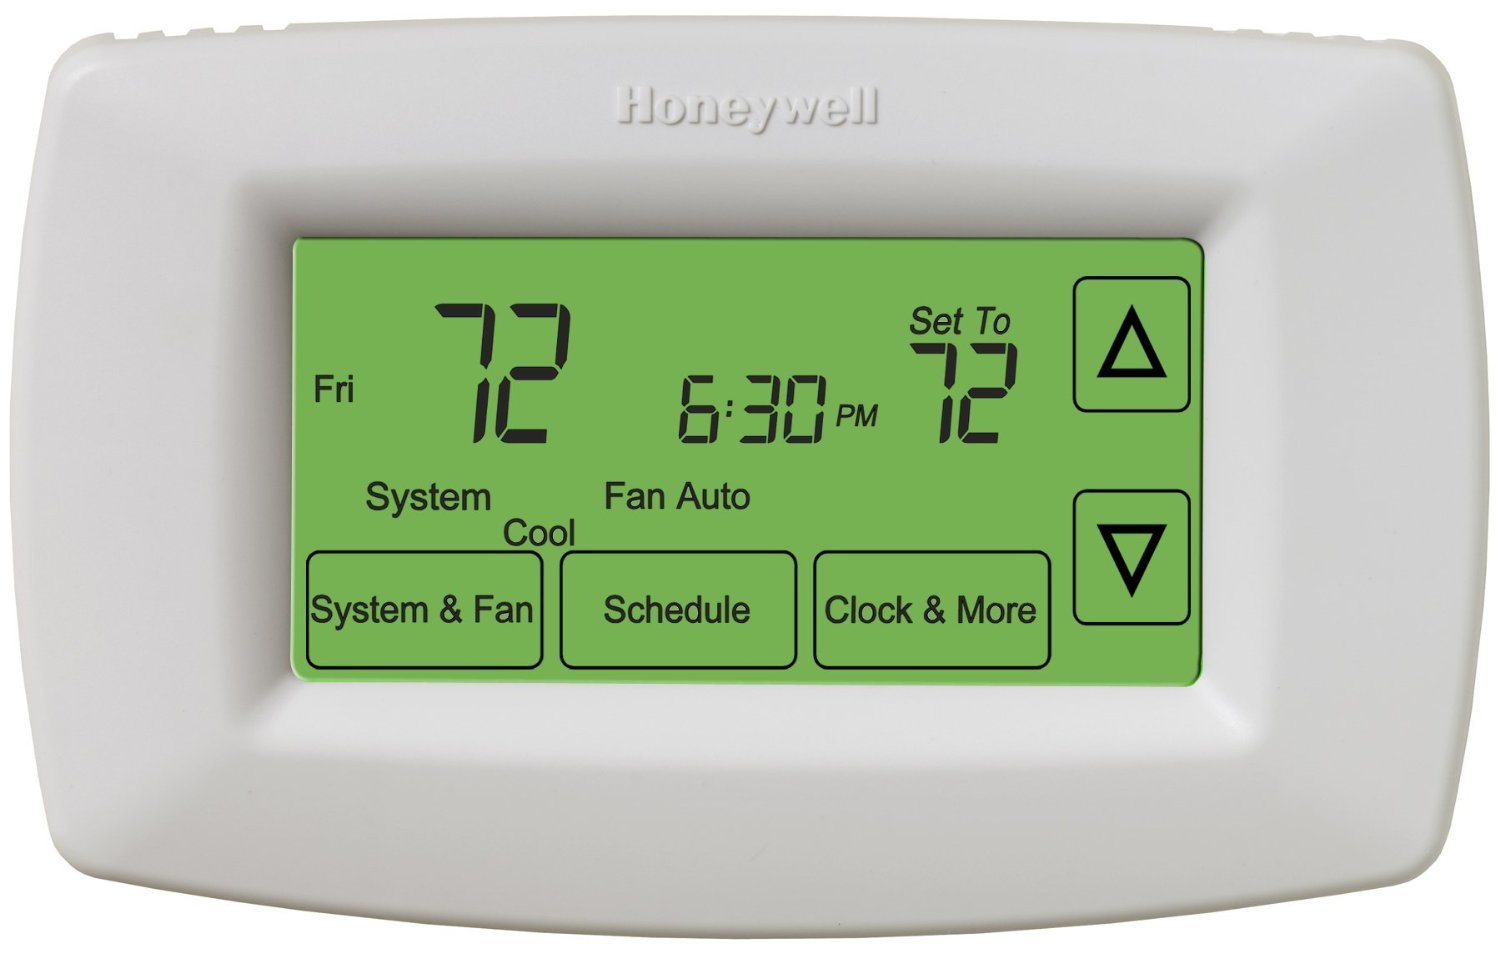 Noma thermostat thm501 manual pdf